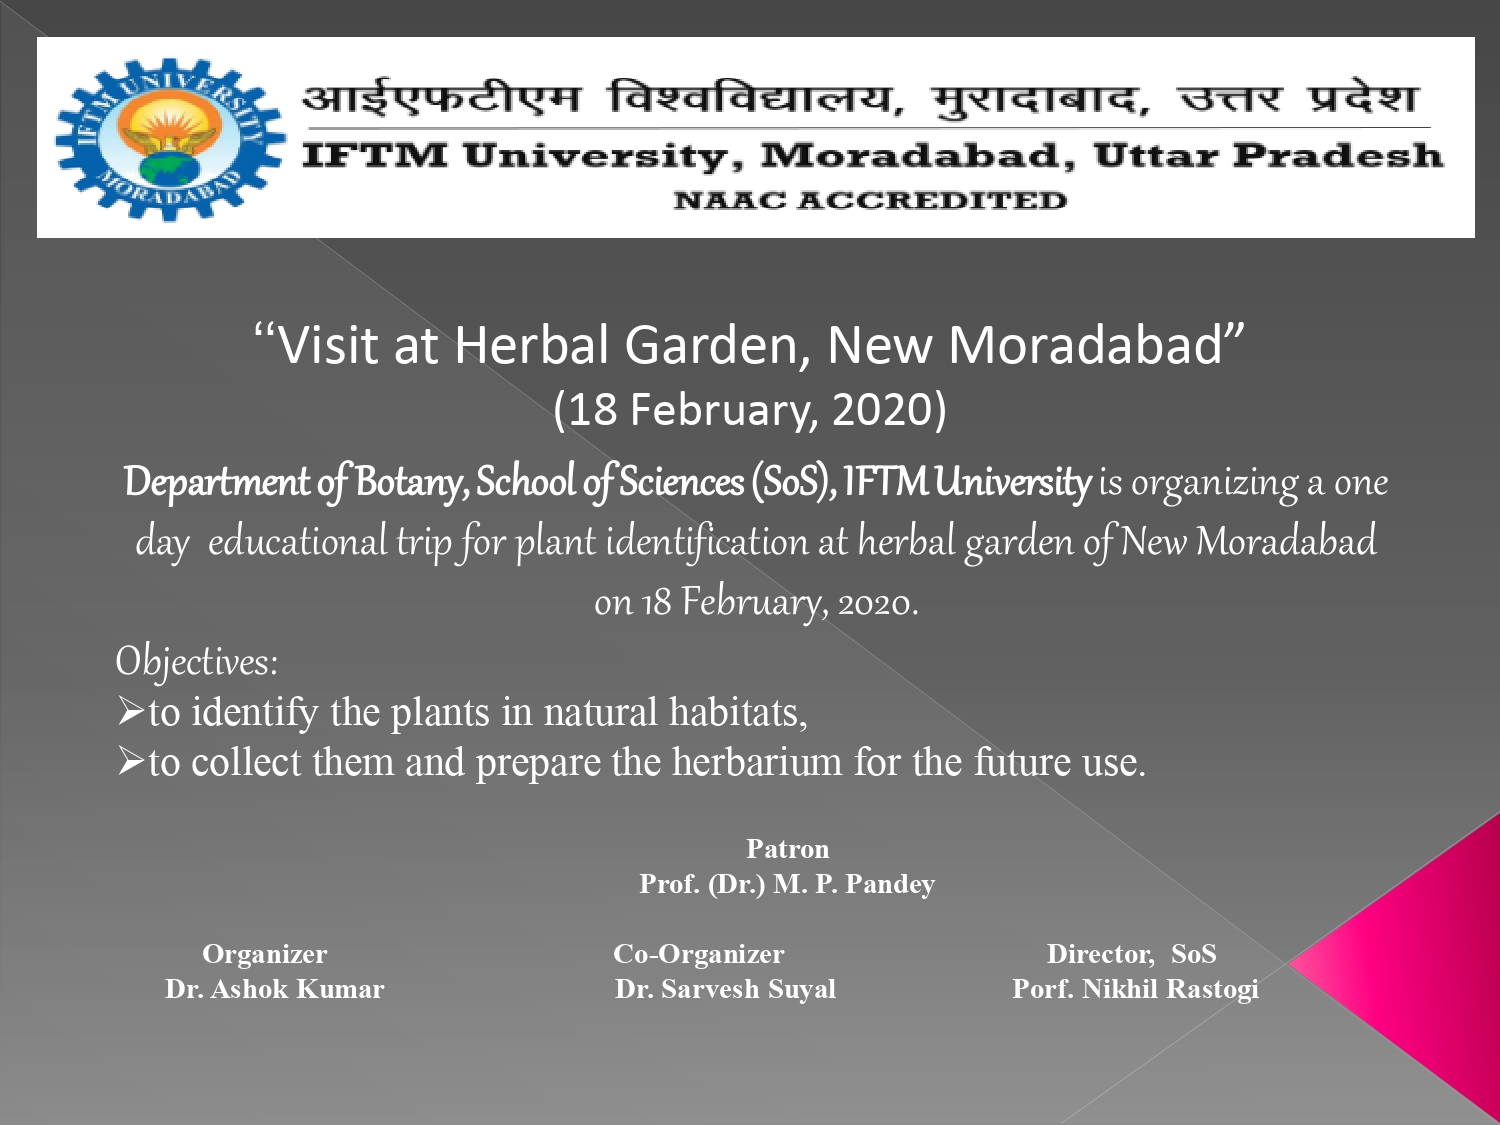  Visit at Herbal Garden-2020